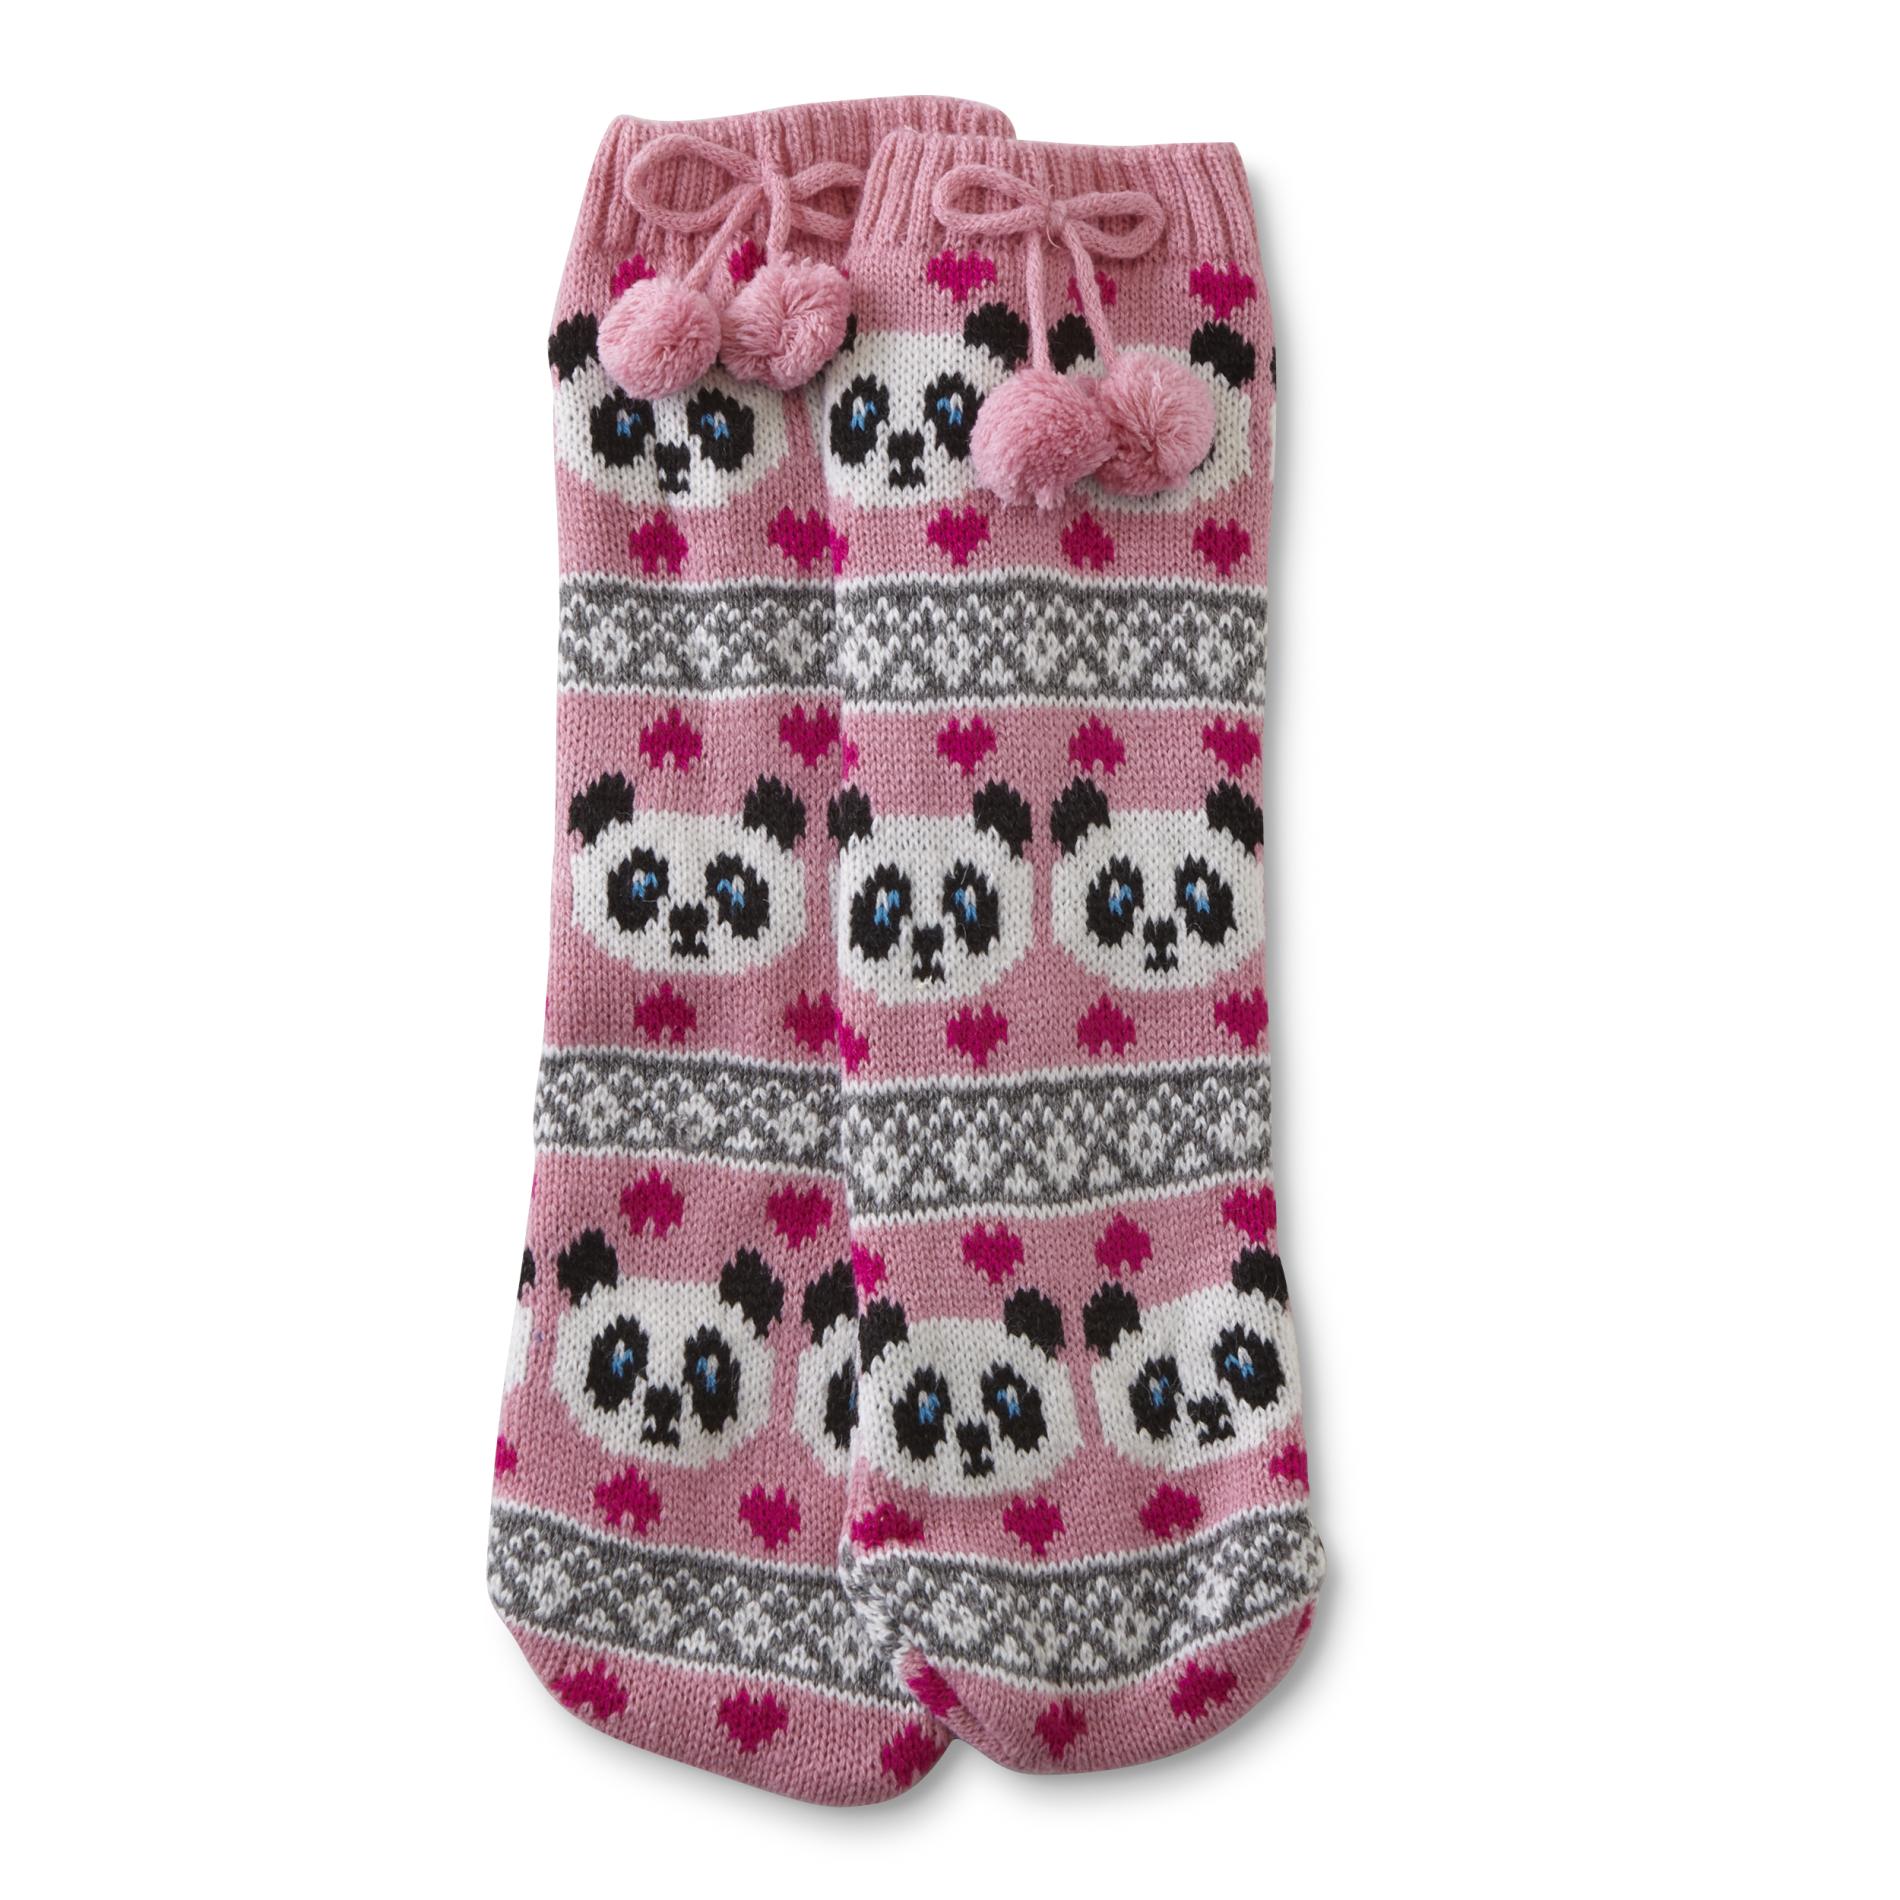 Joe Boxer Girls' Slipper Socks - Argyle & Panda Bears